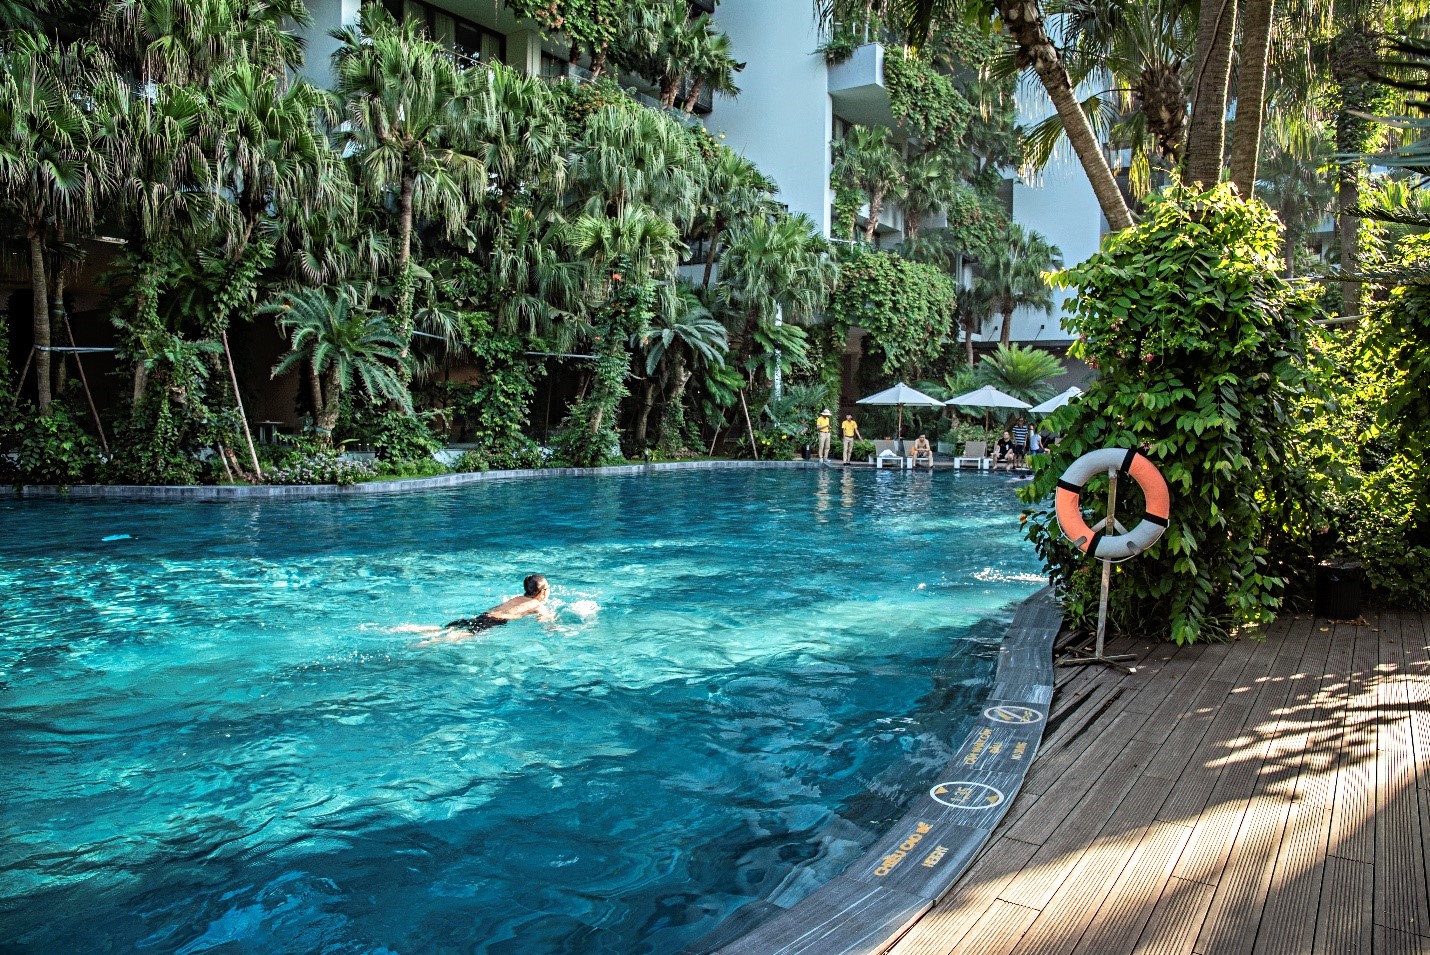 Bể bơi nước nóng ngoài trời cũng là một điểm nhấn thú vị của nhiều resort trong chu trình tăng cường sức khỏe, thư giãn tinh thần